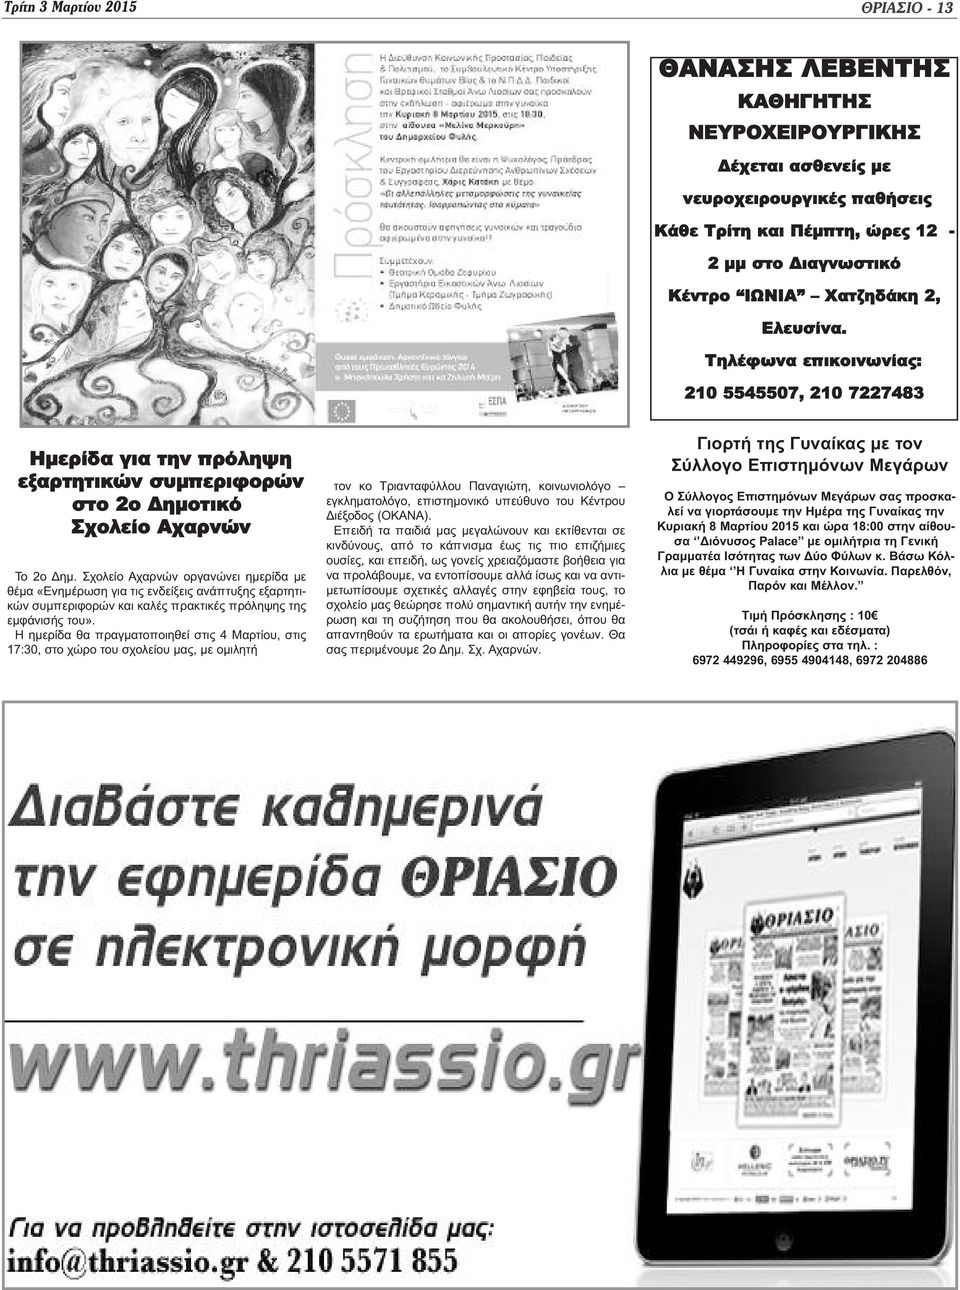 Σχολείο Αχαρνών οργανώνει ημερίδα με θέμα «Ενημέρωση για τις ενδείξεις ανάπτυξης εξαρτητικών συμπεριφορών και καλές πρακτικές πρόληψης της εμφάνισής του».